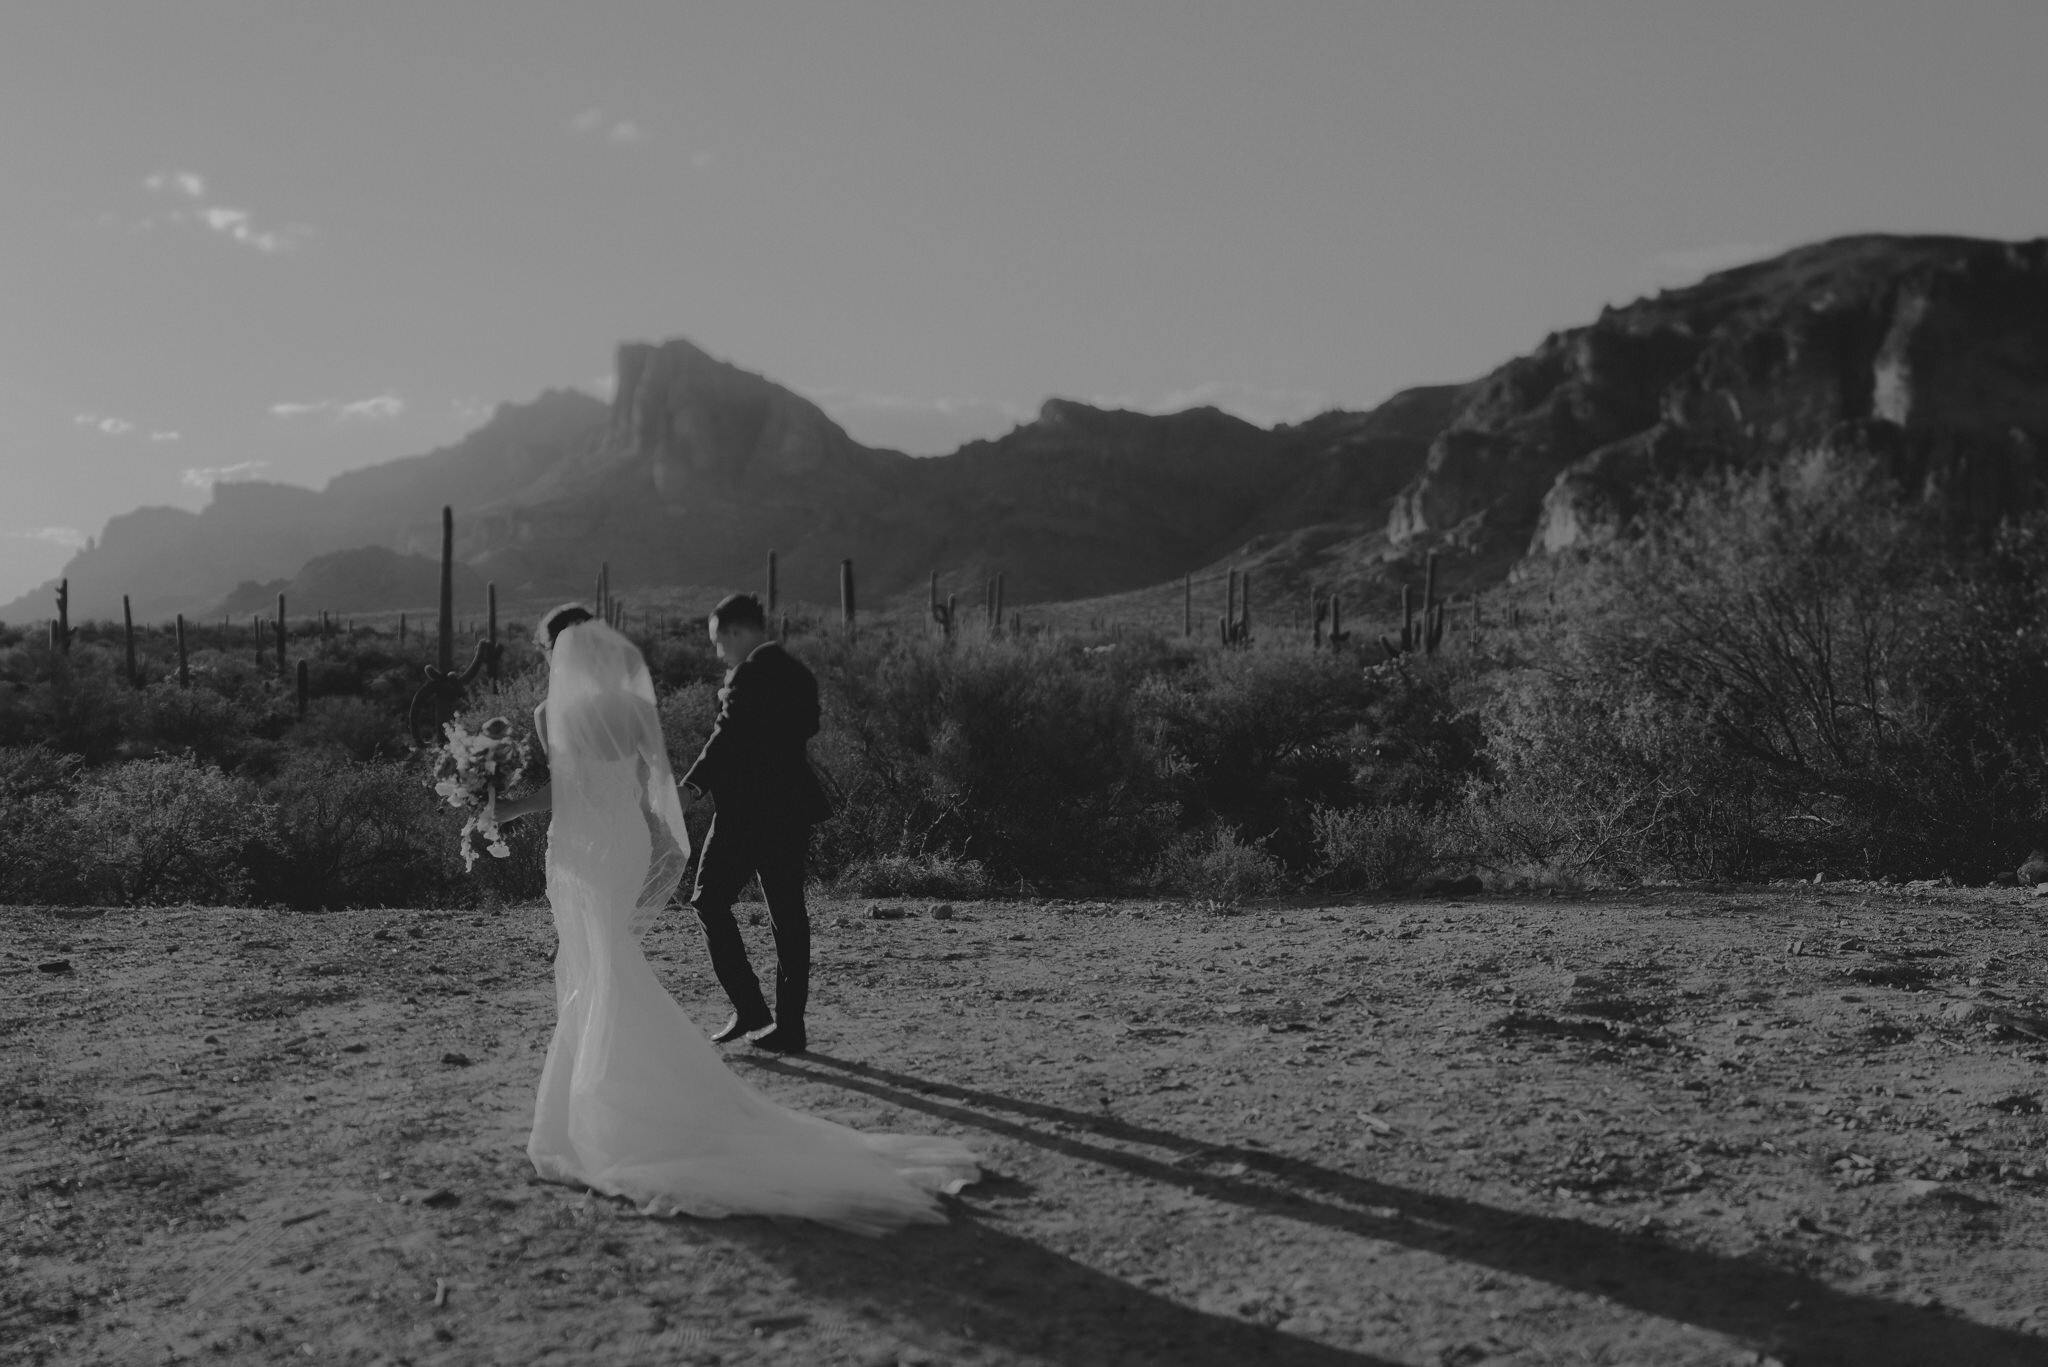 california wedding photograhers - desert elopement - supersition mountains - isaiahandtaylor.com-86.jpg